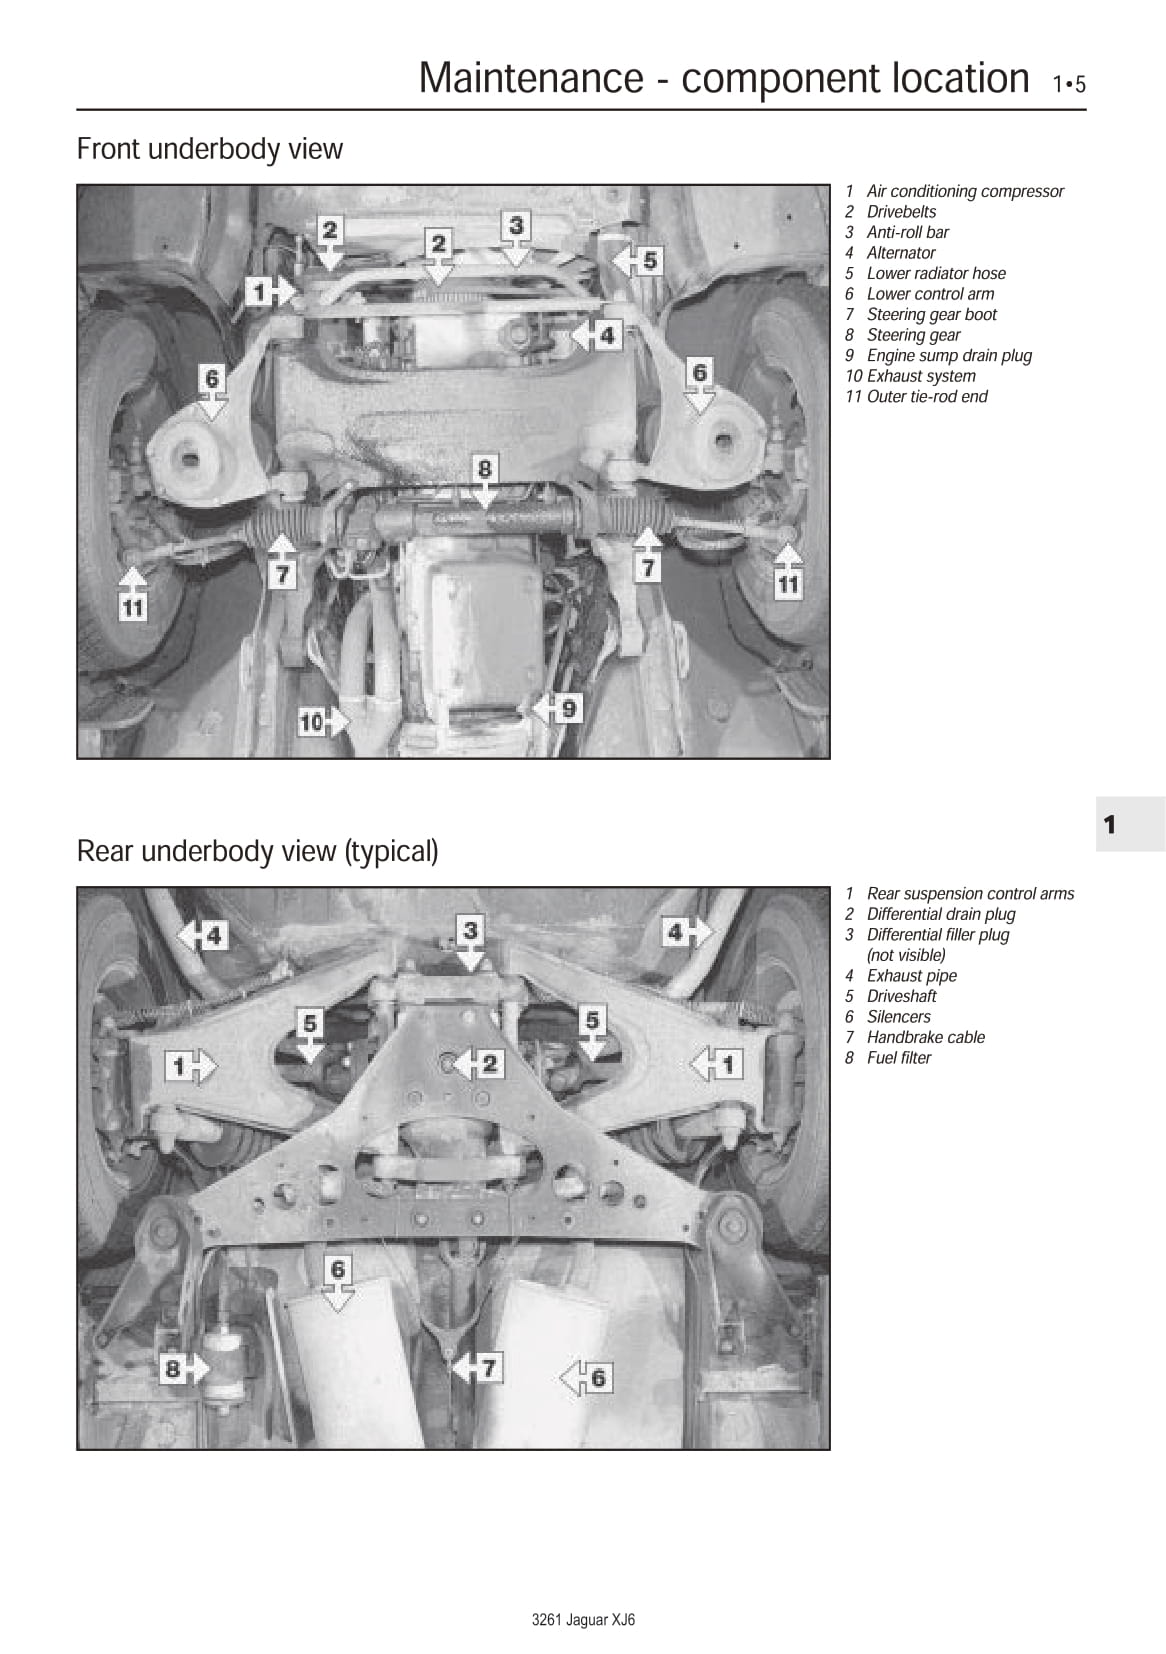 Jaguar Service and Repair Owner's Manual XJ6